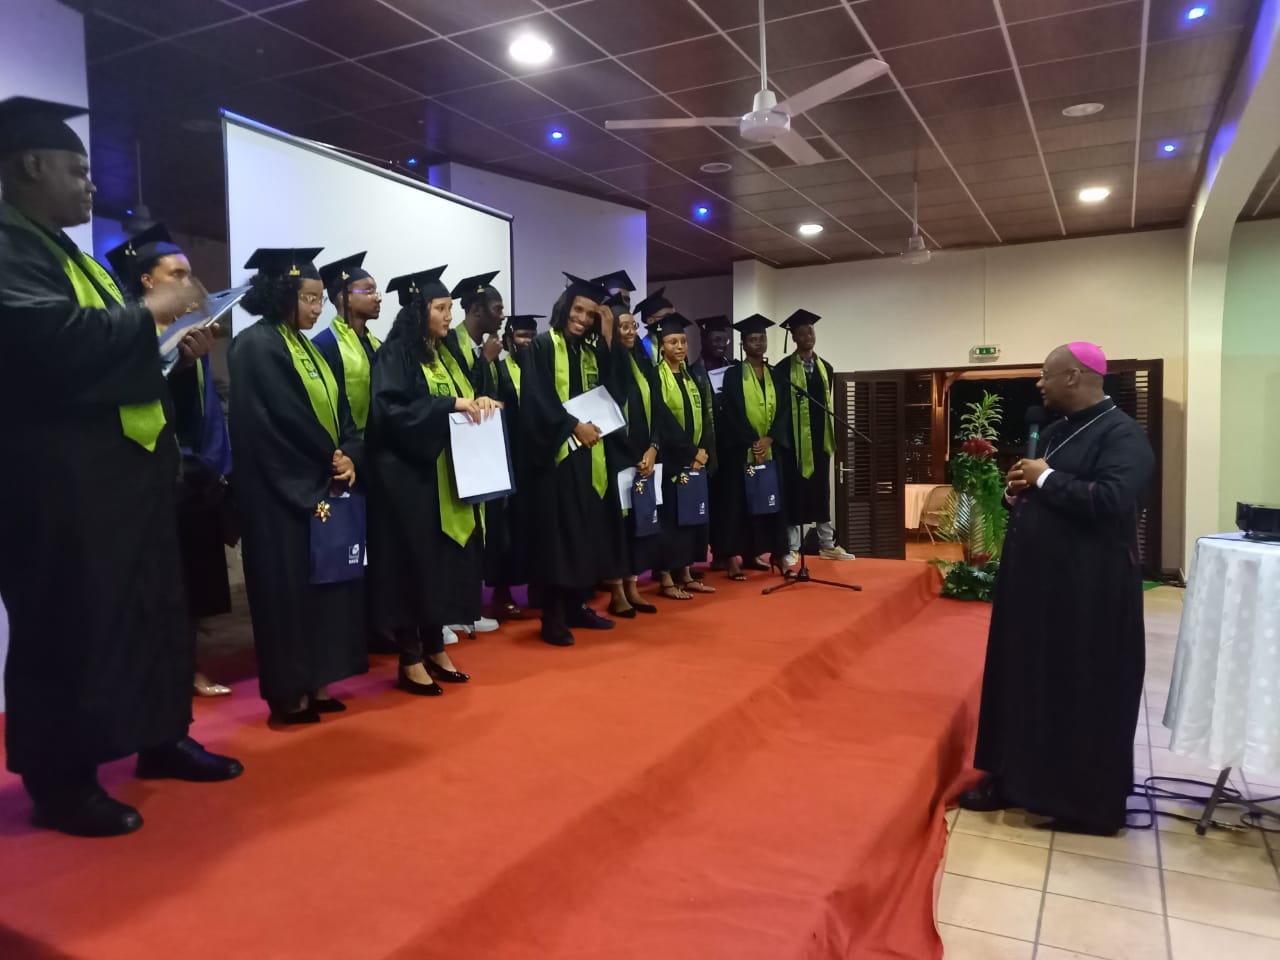     Première cérémonie de remise des diplômes à l'Institut Catholique Européen des Amériques

